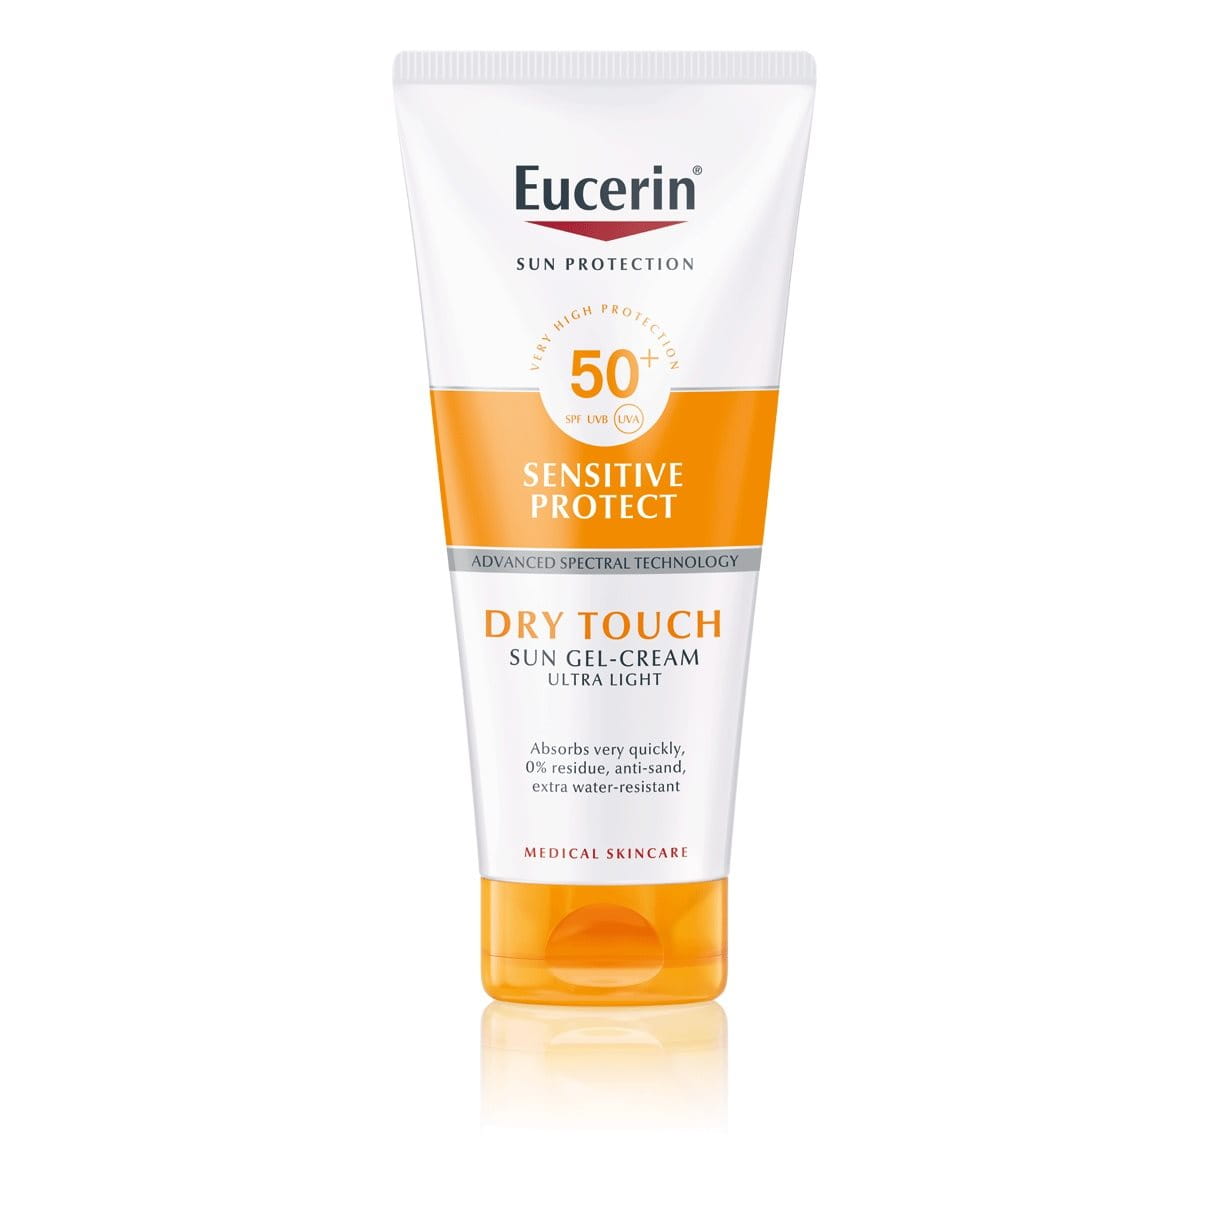 Eucerini Sensitive Protecti päikesekaitse geel-kreem Dry Touch tundlikule nahale (SPF 50+)